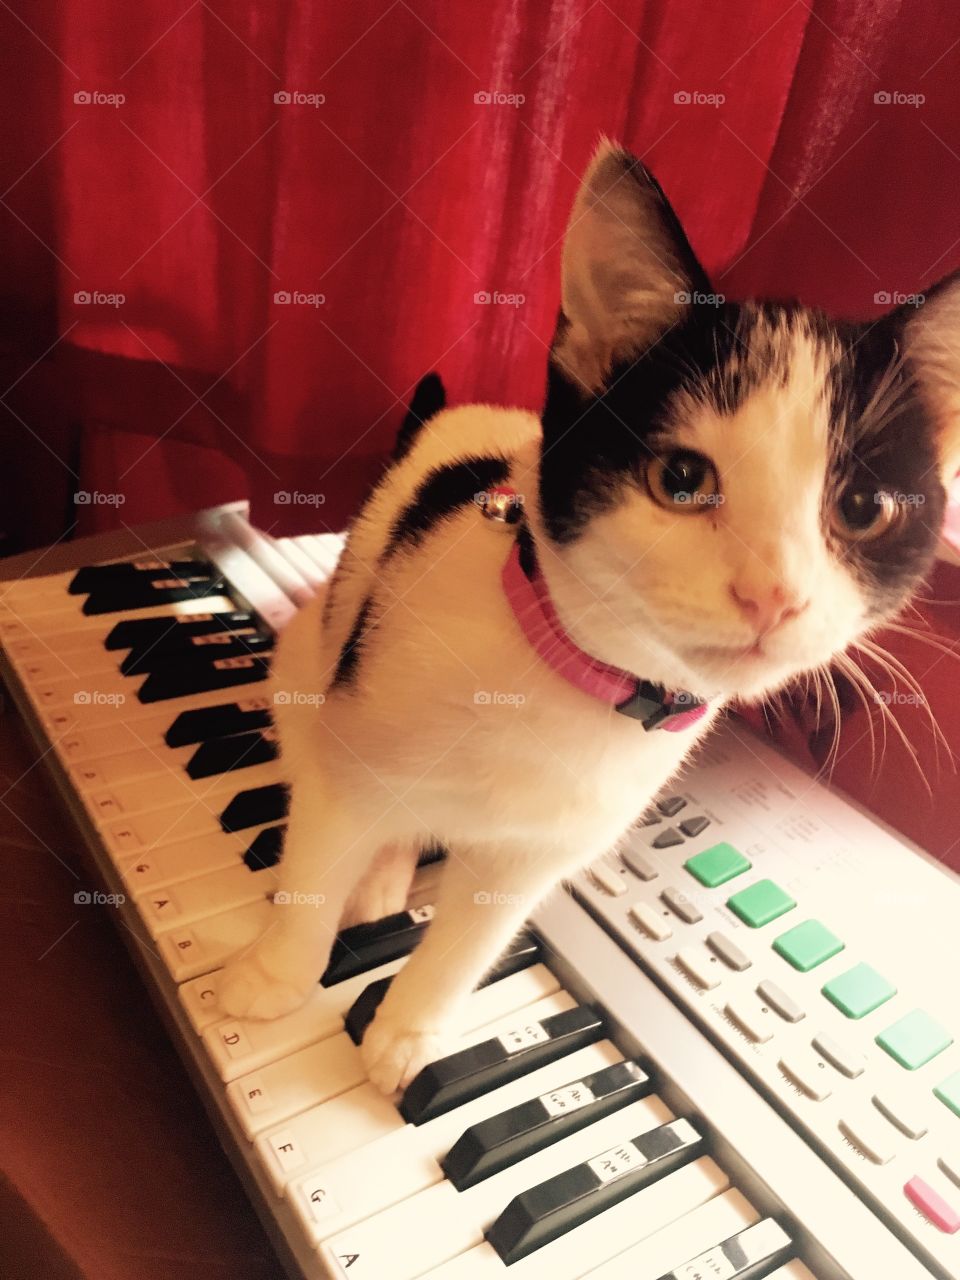 Keyboard kitty 😍🐱